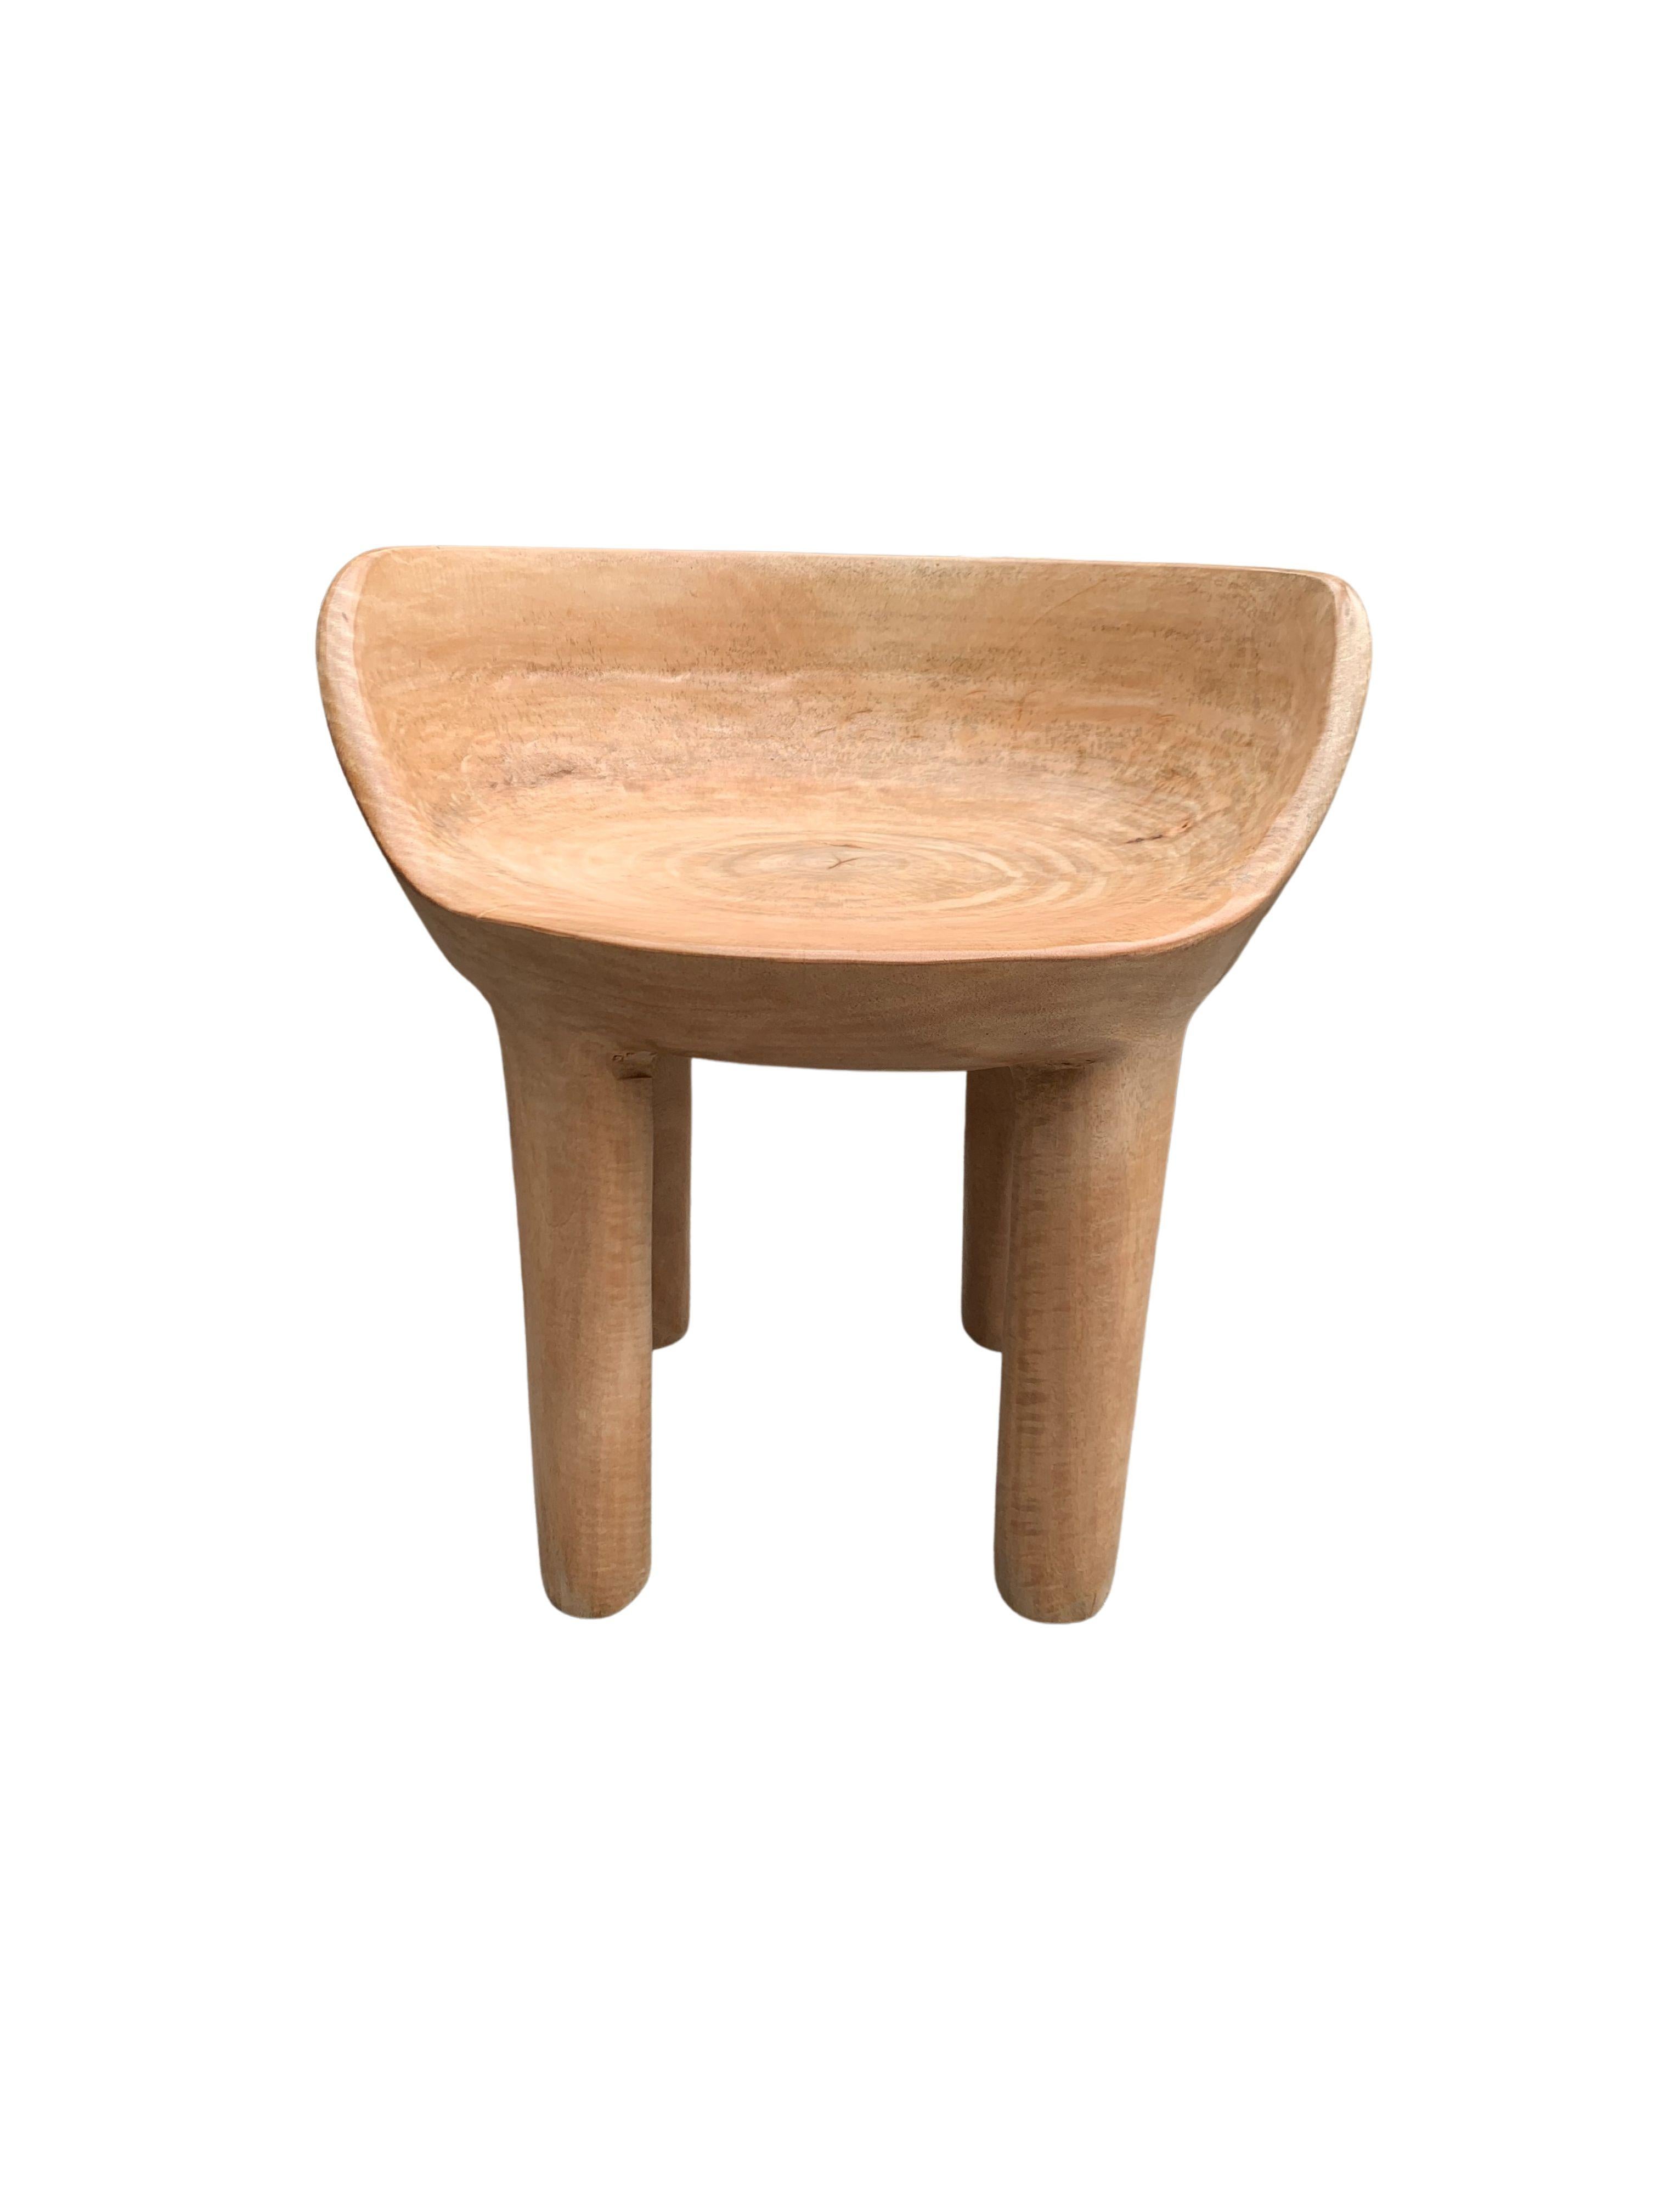 Dieser wunderbare skulpturale Stuhl wurde aus einem einzigen Block Mangoholz gefertigt. Der Stuhl ruht auf 4 schlanken Beinen. Durch seine neutrale Pigmentierung passt er perfekt in jeden Raum. Ein einzigartiges skulpturales und vielseitiges Stück,